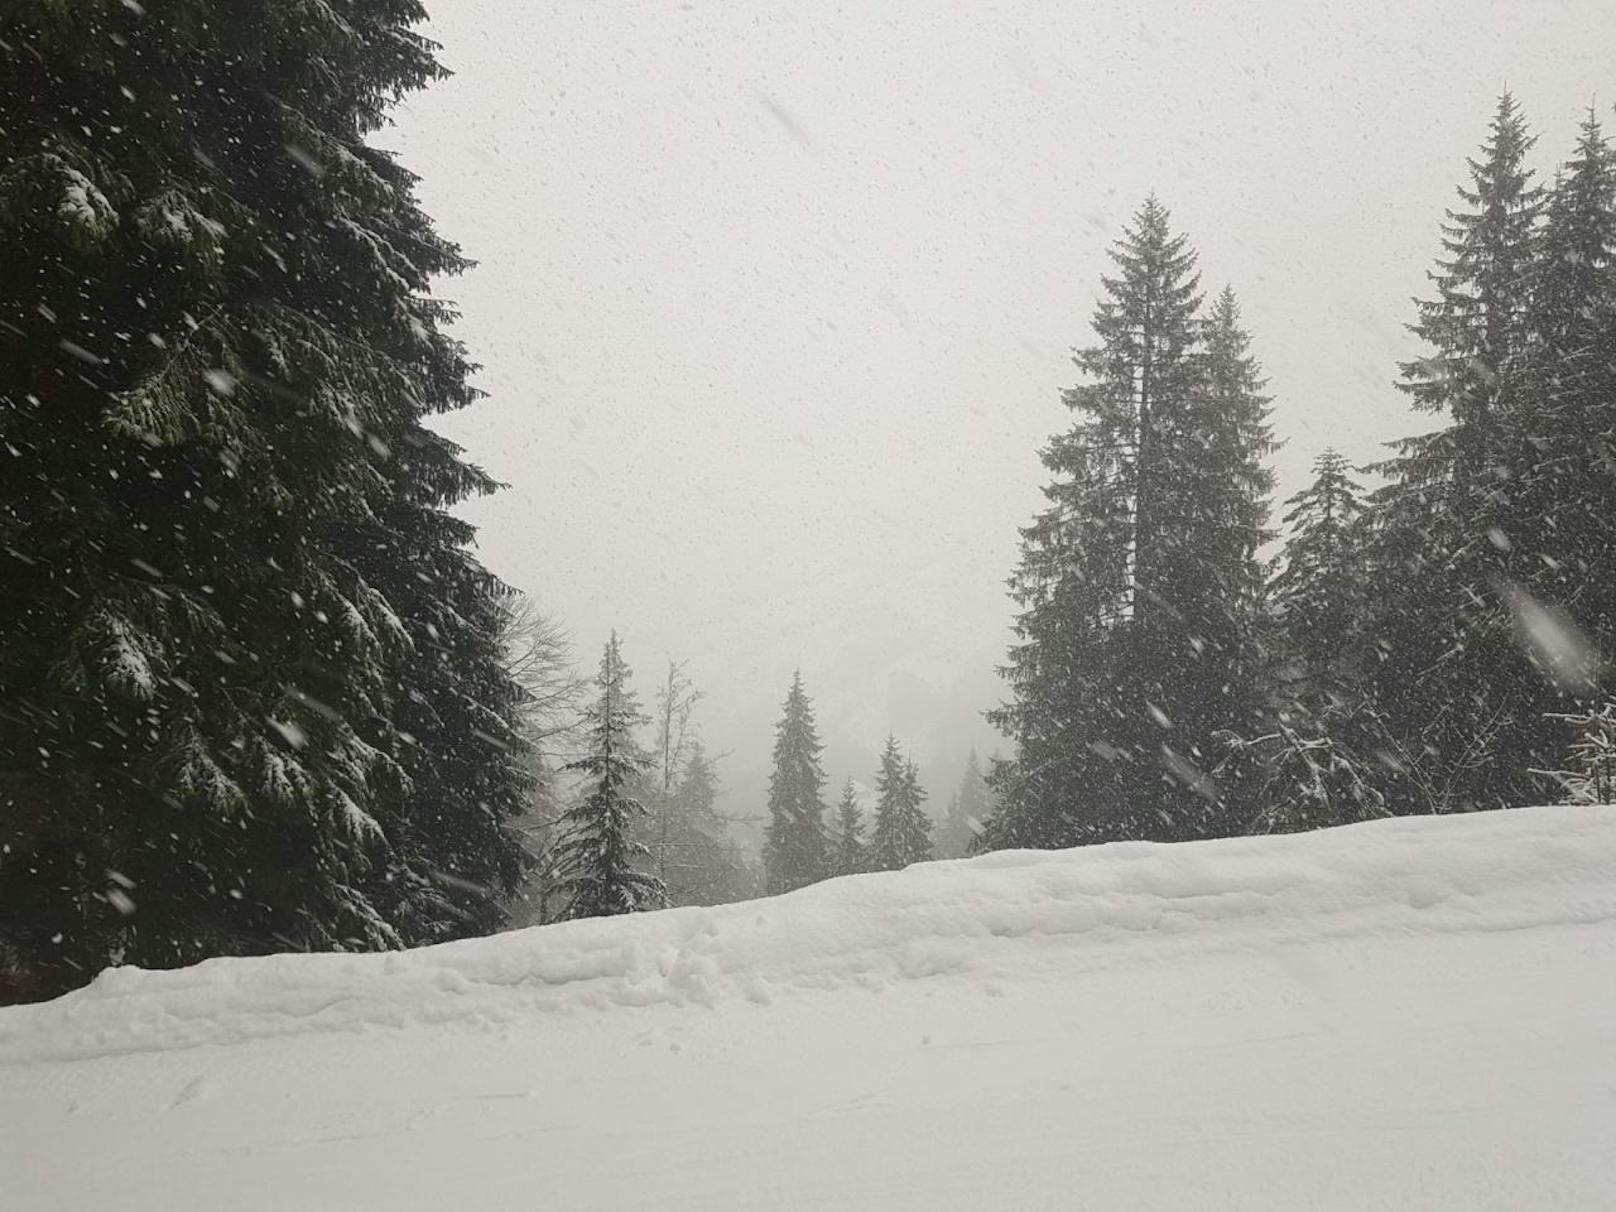 "Alle Lifte in Scheffau geschlossen. Zuerst schönes Wetter danach Nebel, Wind, Schnee und sogar ein Blitz gesichtet."